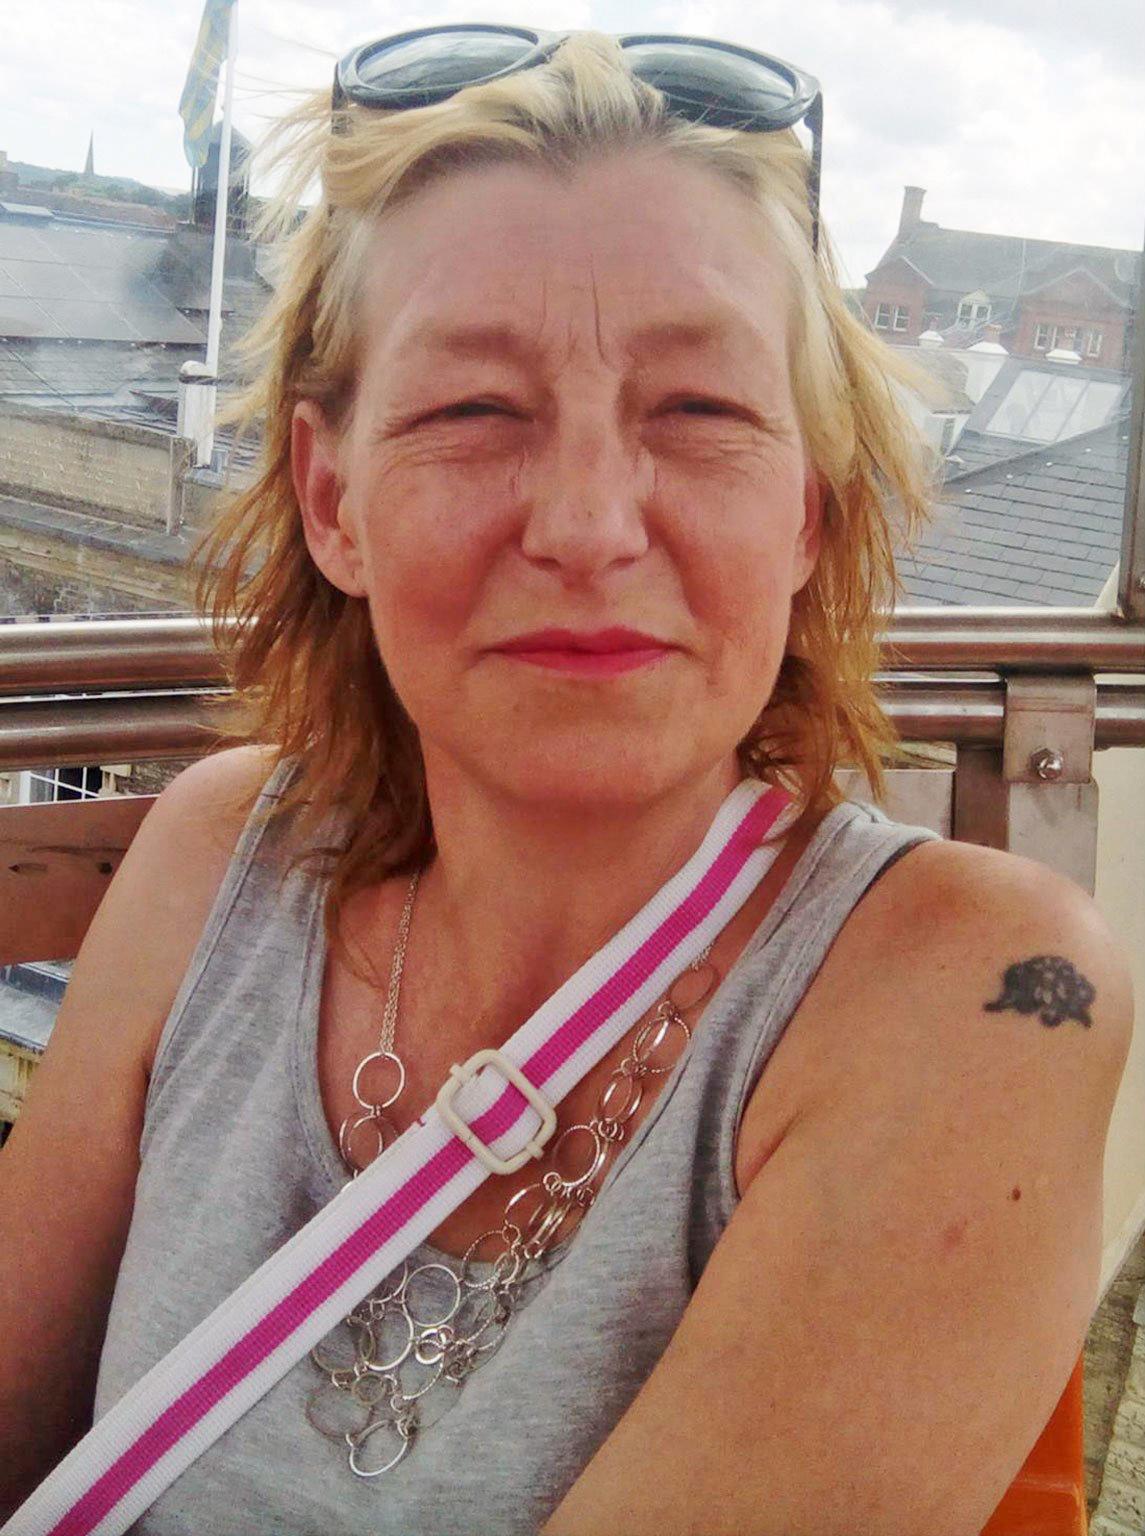 Dawn Sturgess, 44, har dött efter att ha exponerats för nervgiftet, enligt brittisk polis. 